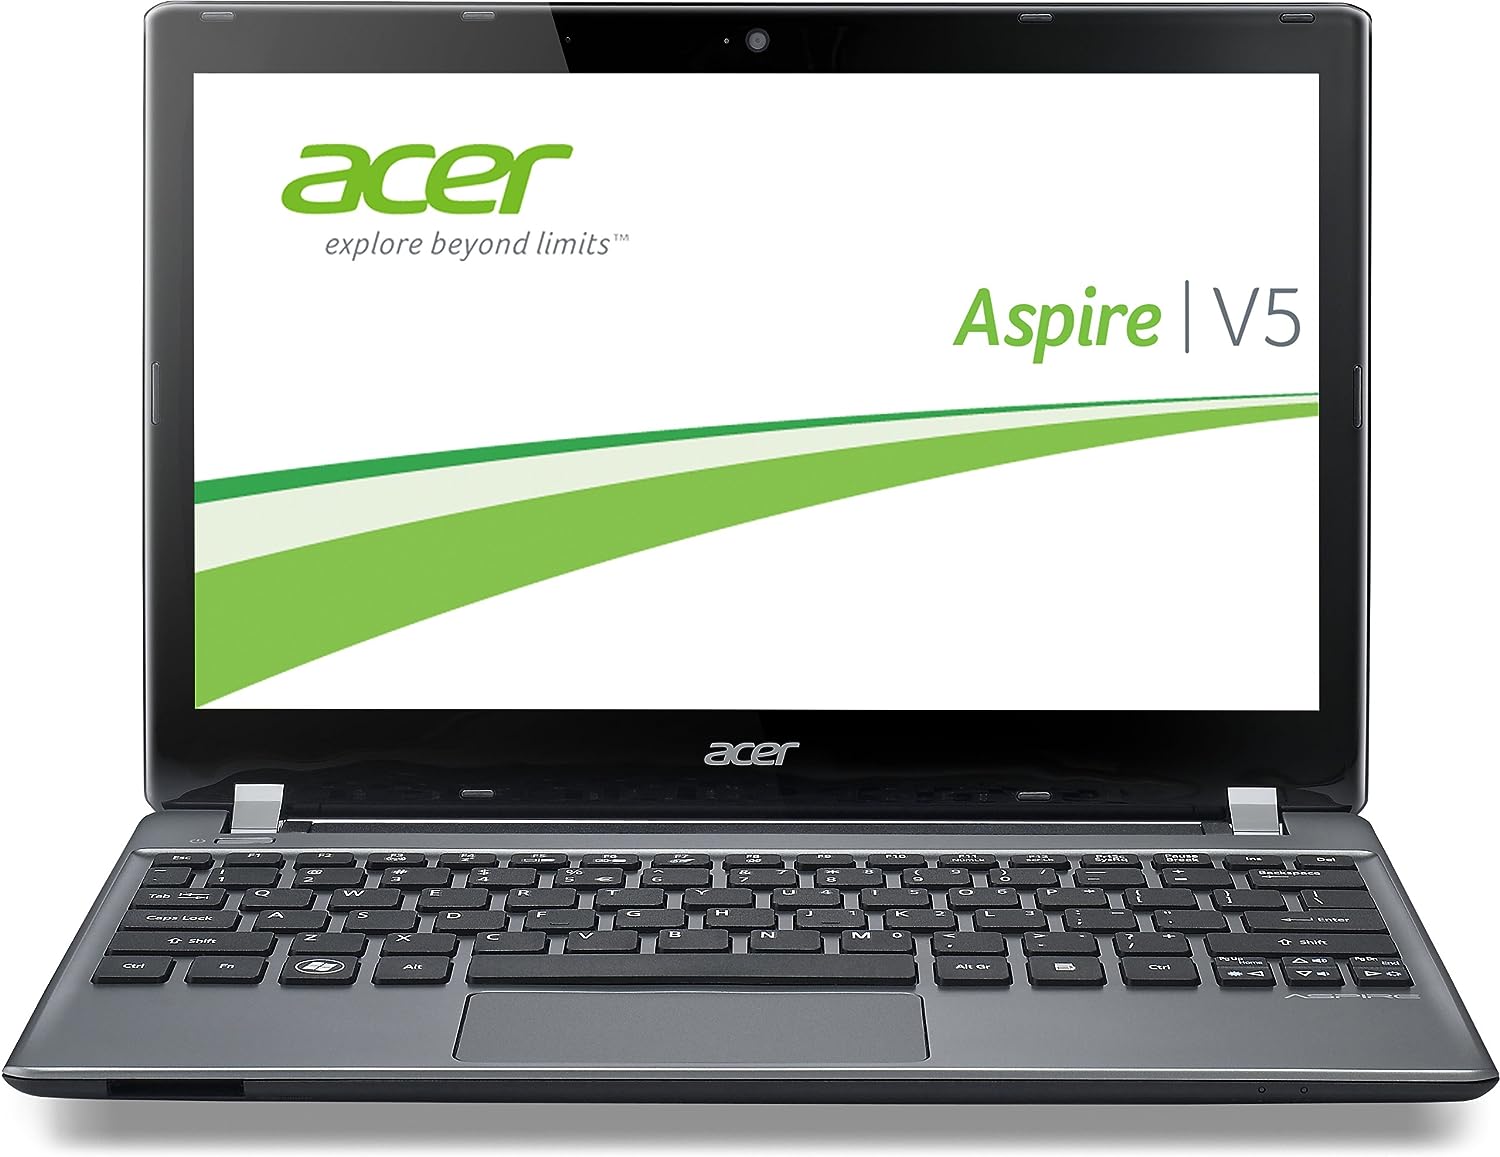 Acer Aspire V5-561 Notebook